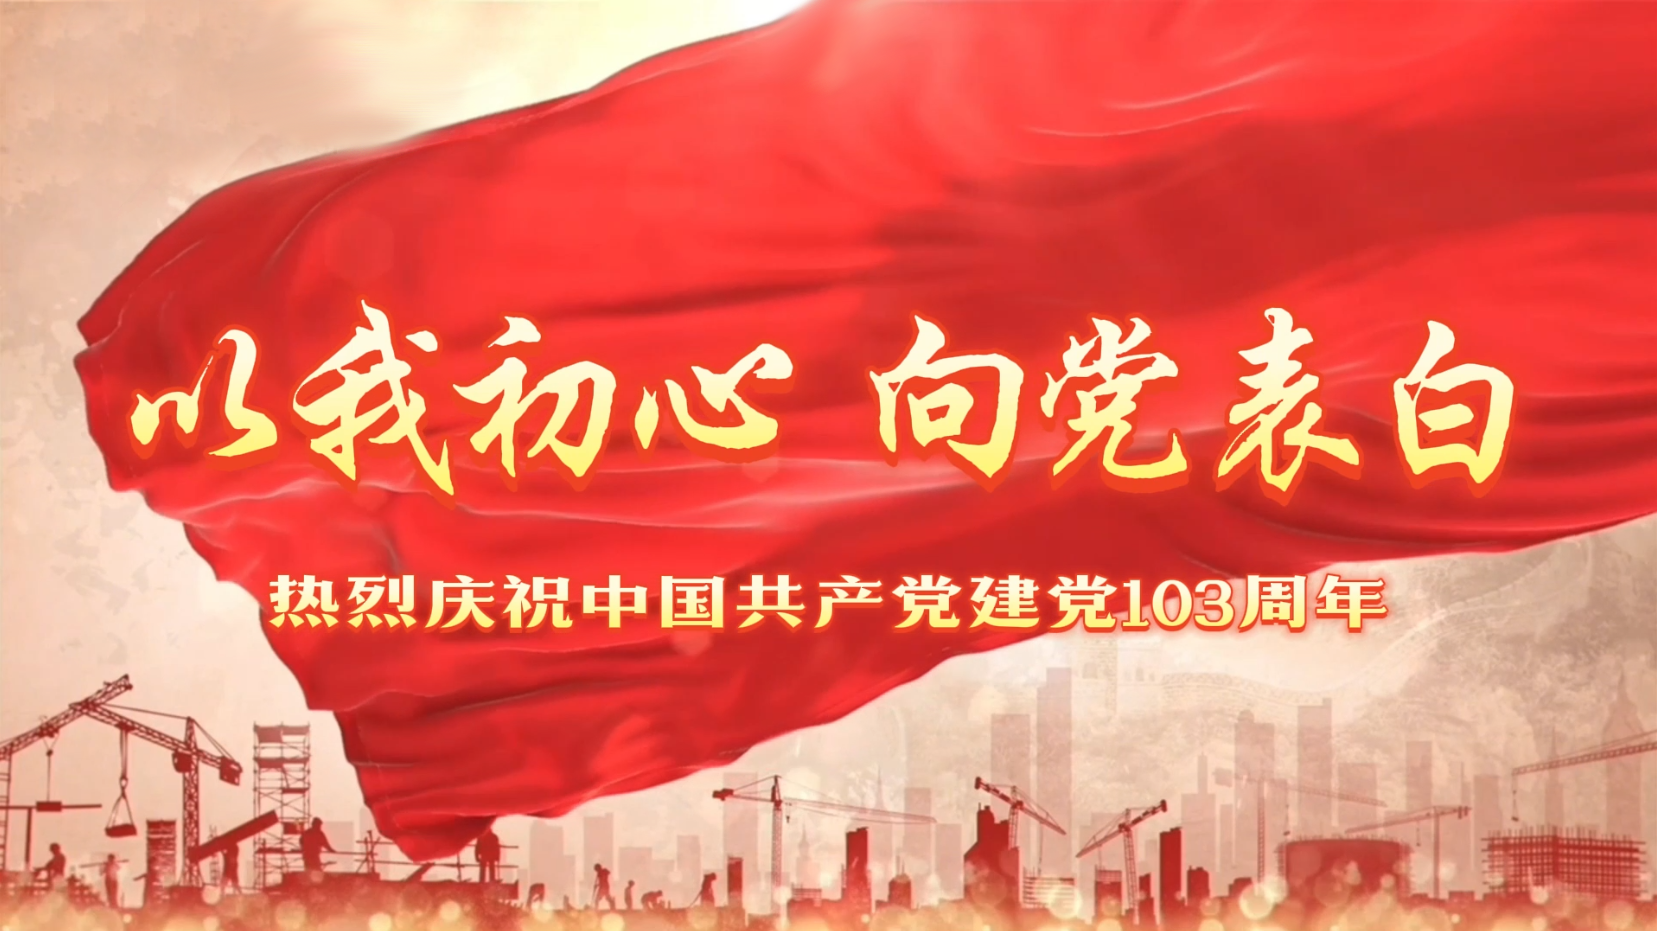 红心永向党 建功新时代丨大元集团开展庆祝中国共产党成立103周年系列活动